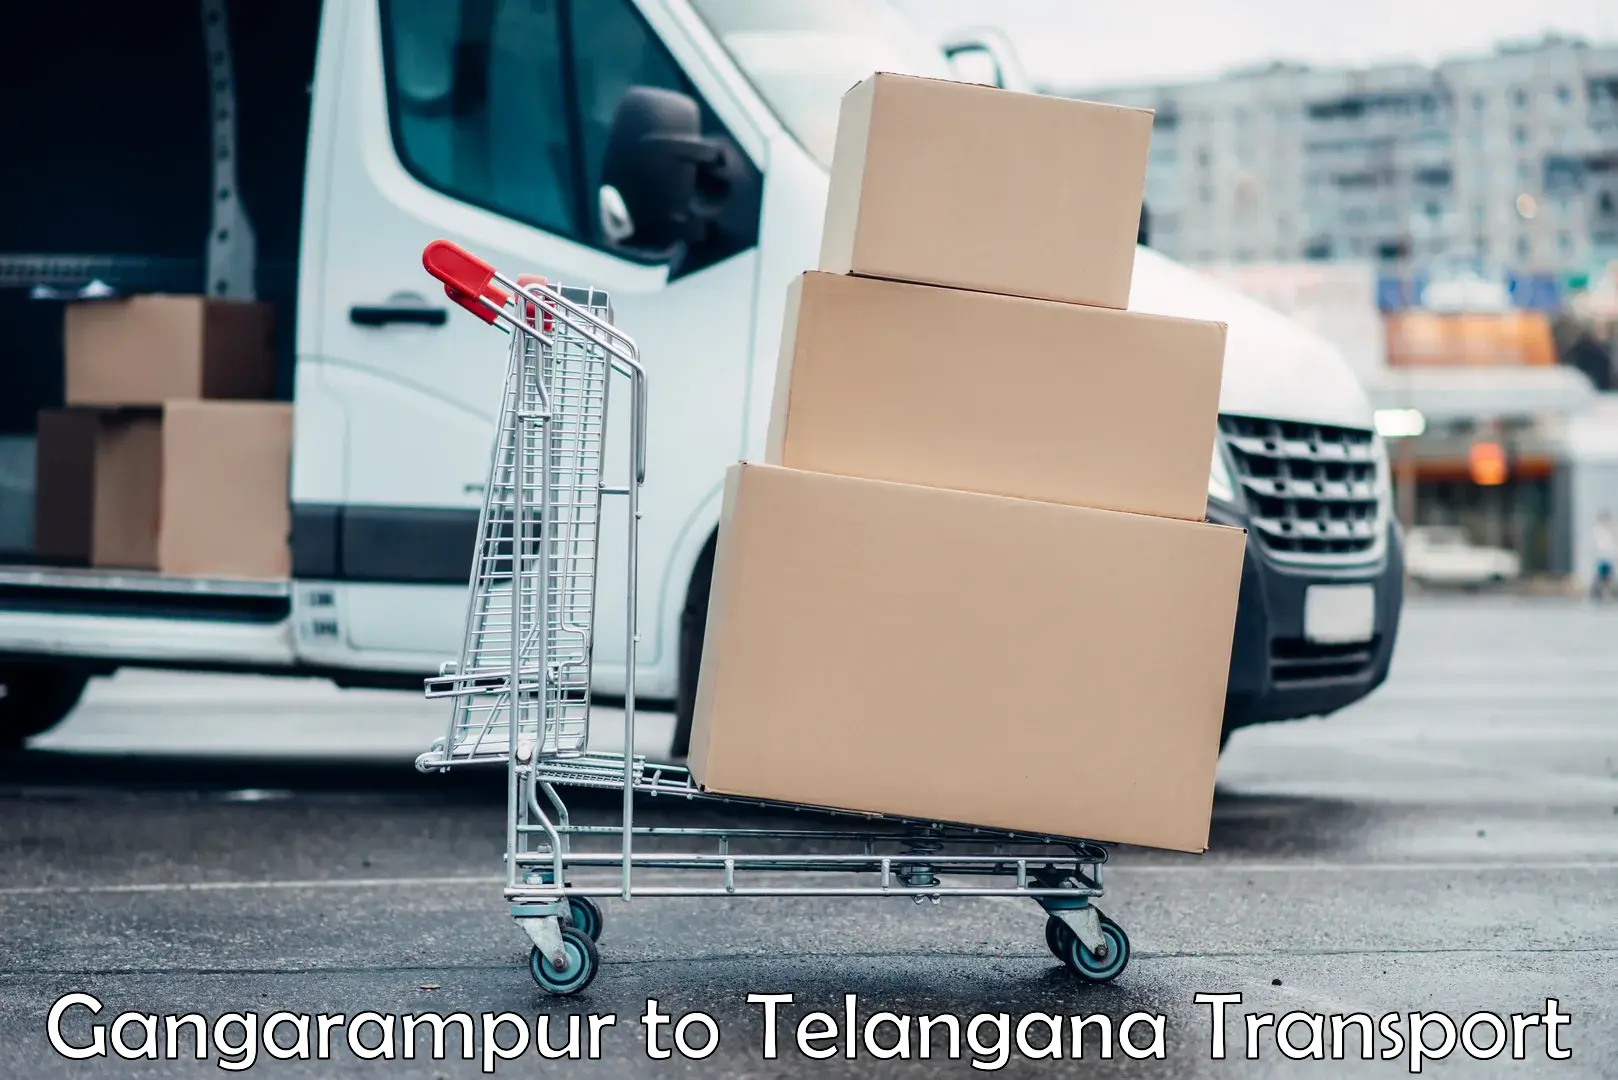 Transport in sharing Gangarampur to Ramannapeta